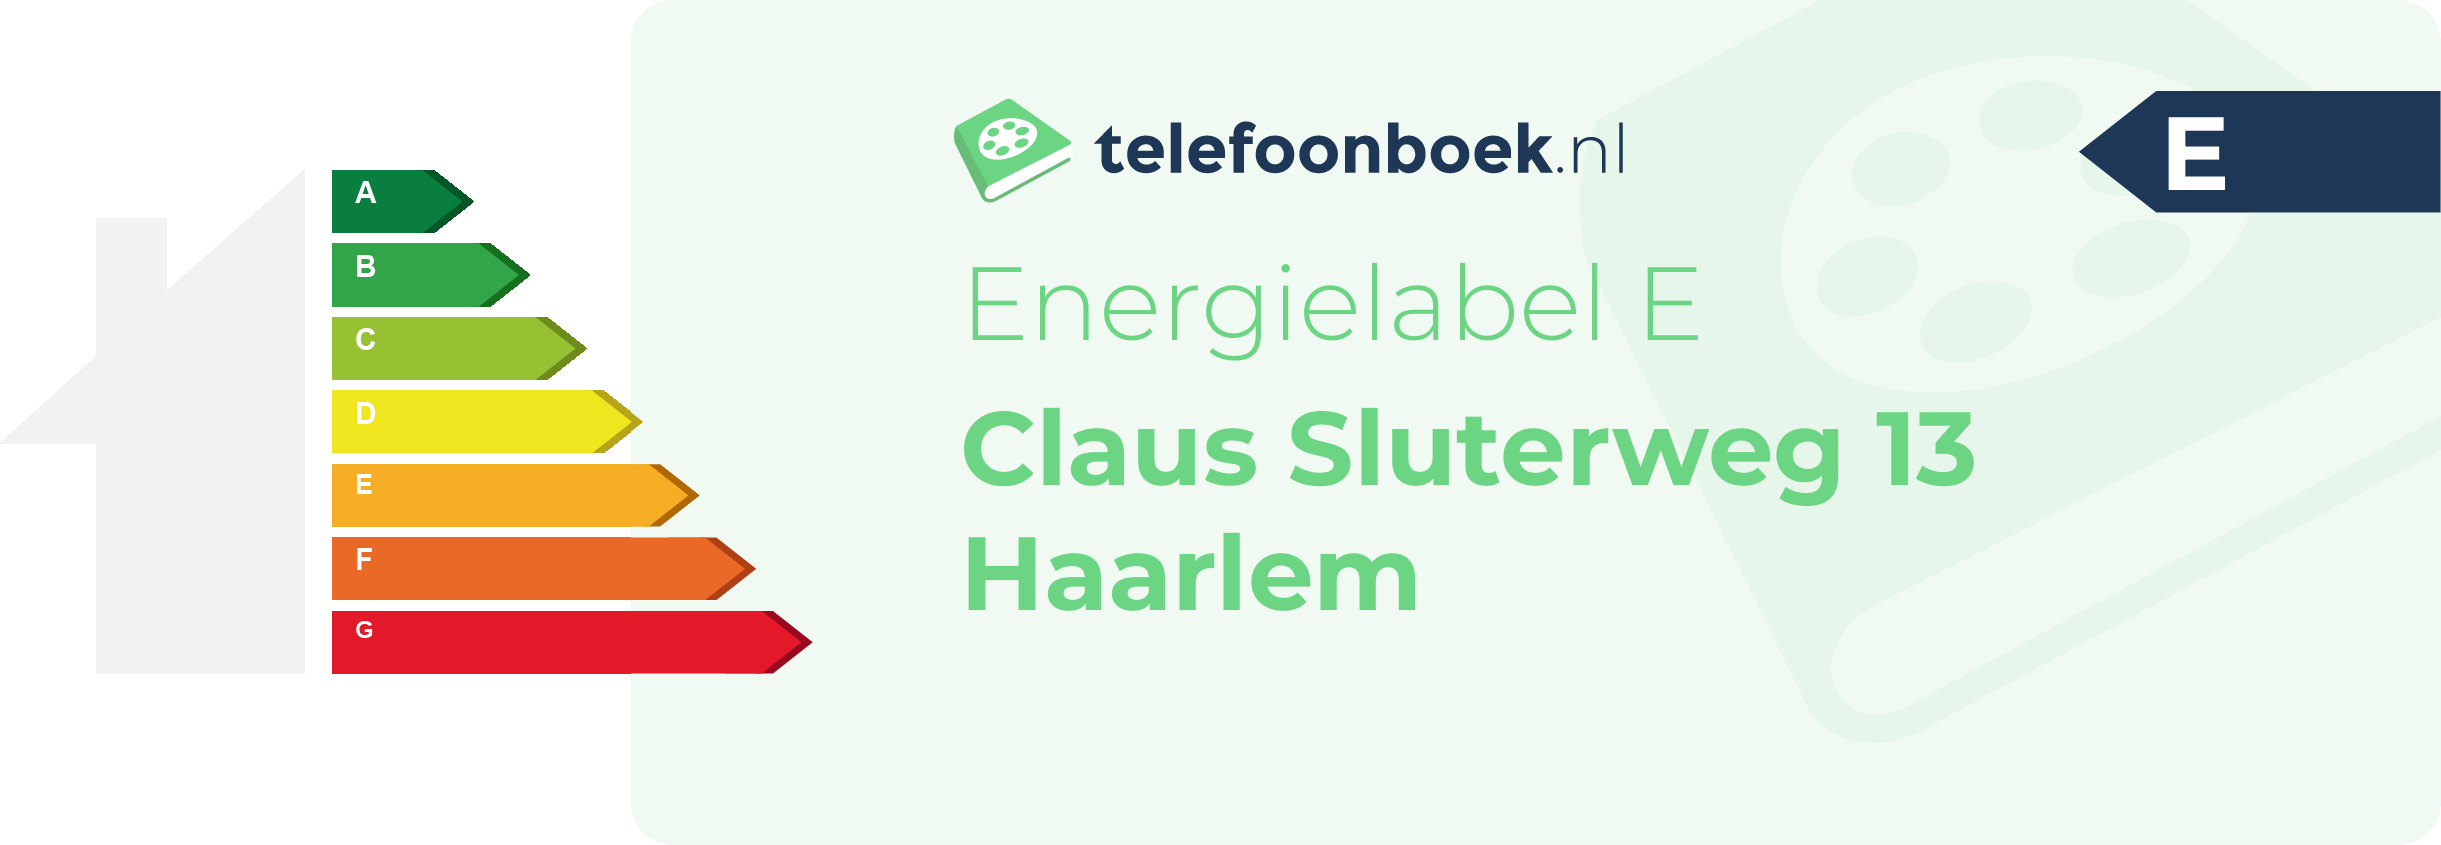 Energielabel Claus Sluterweg 13 Haarlem